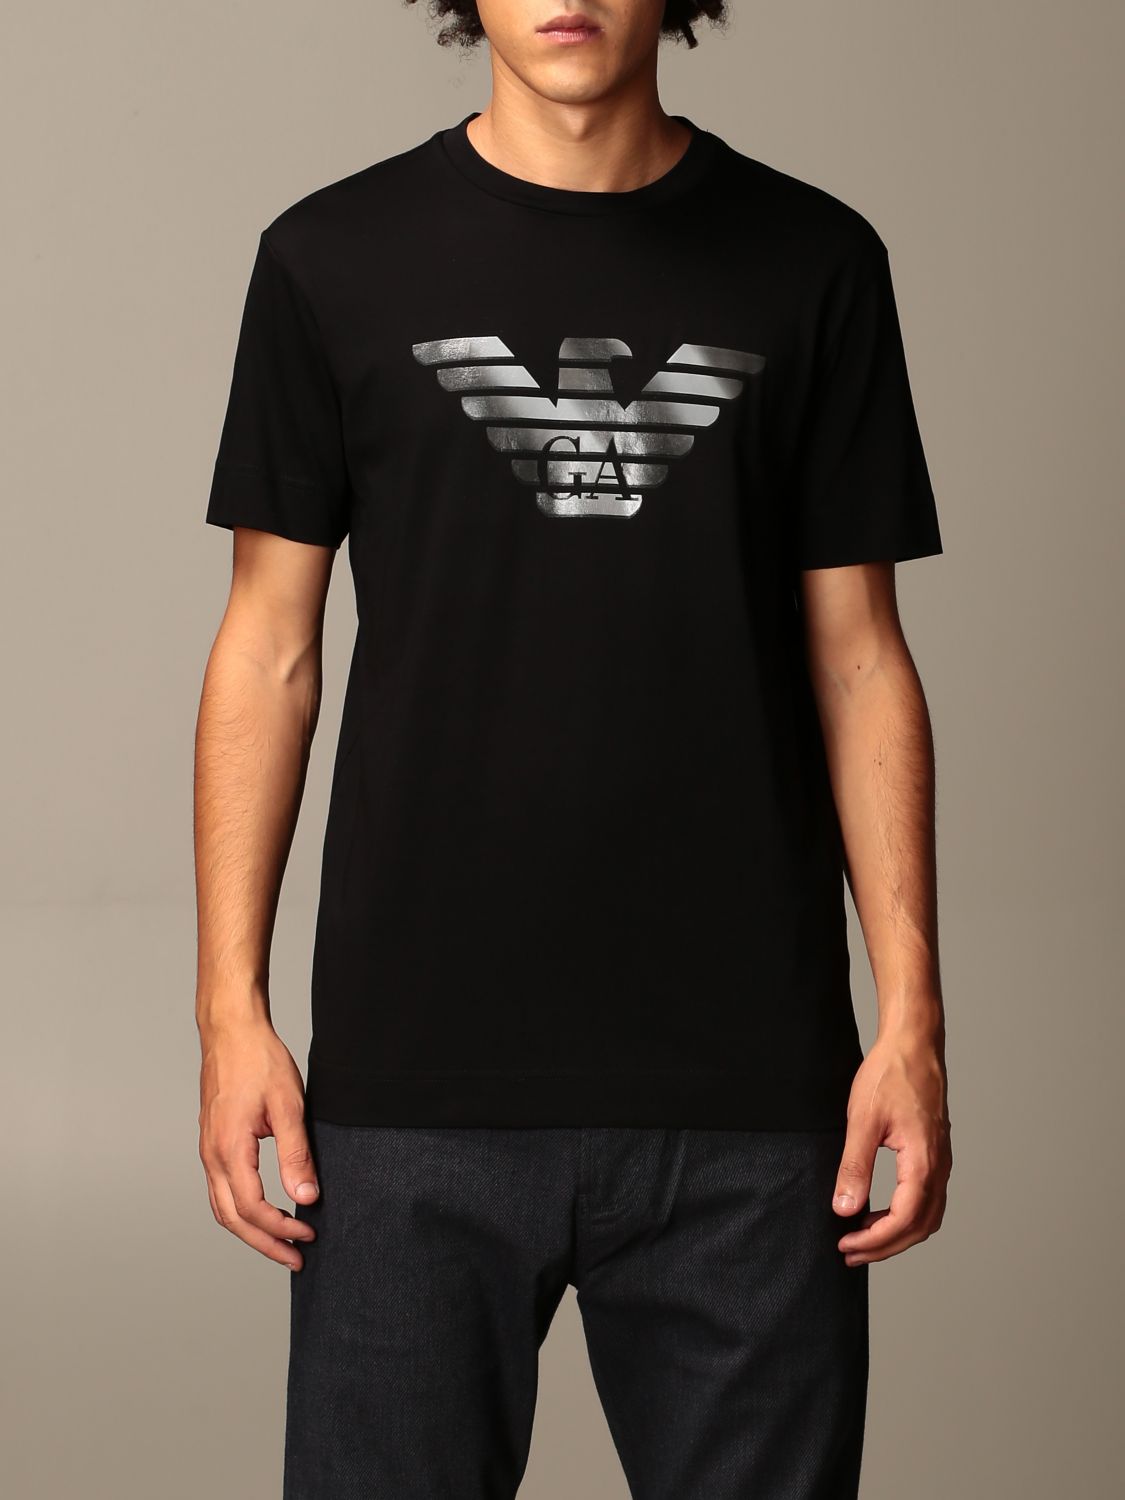 Emporio Armani Outlet: cotton t-shirt with logo - Black | Emporio ...